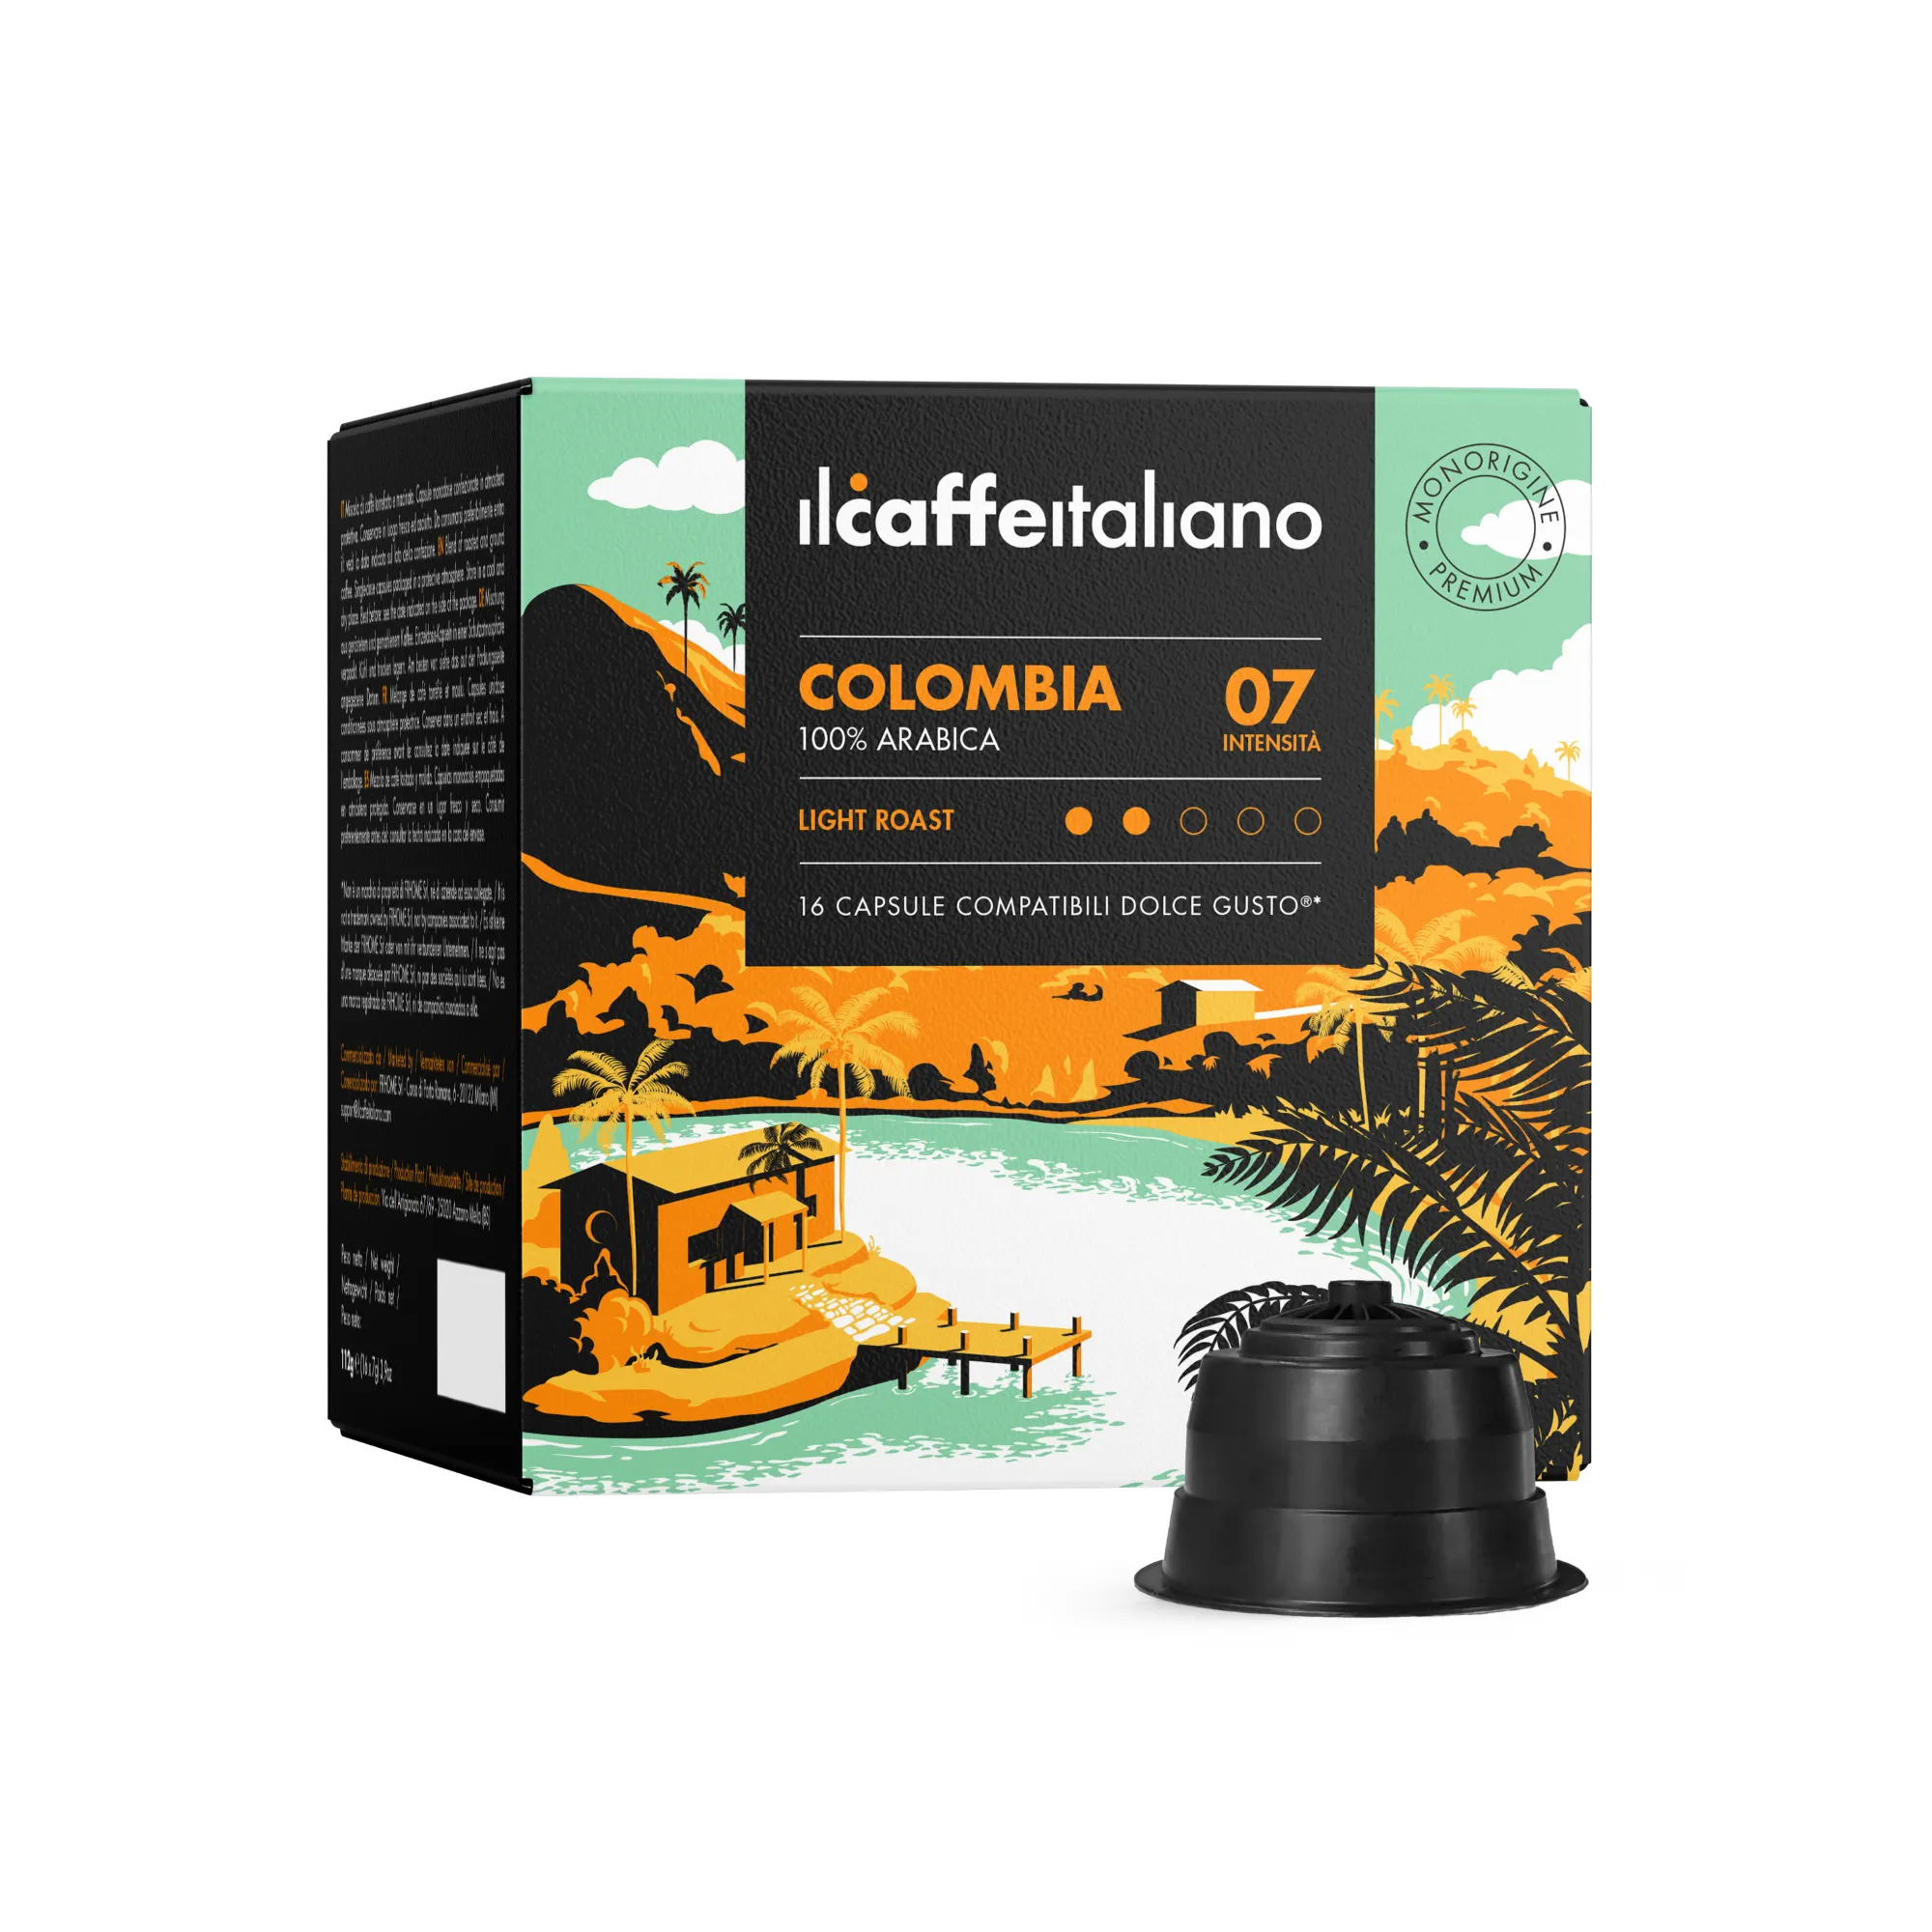 इटली में किए गए-48 कॉफी कैप्सूल संगत डोल्से उत्साह (आर) *-कोलम्बिया-संगत कॉफी कैप्सूल